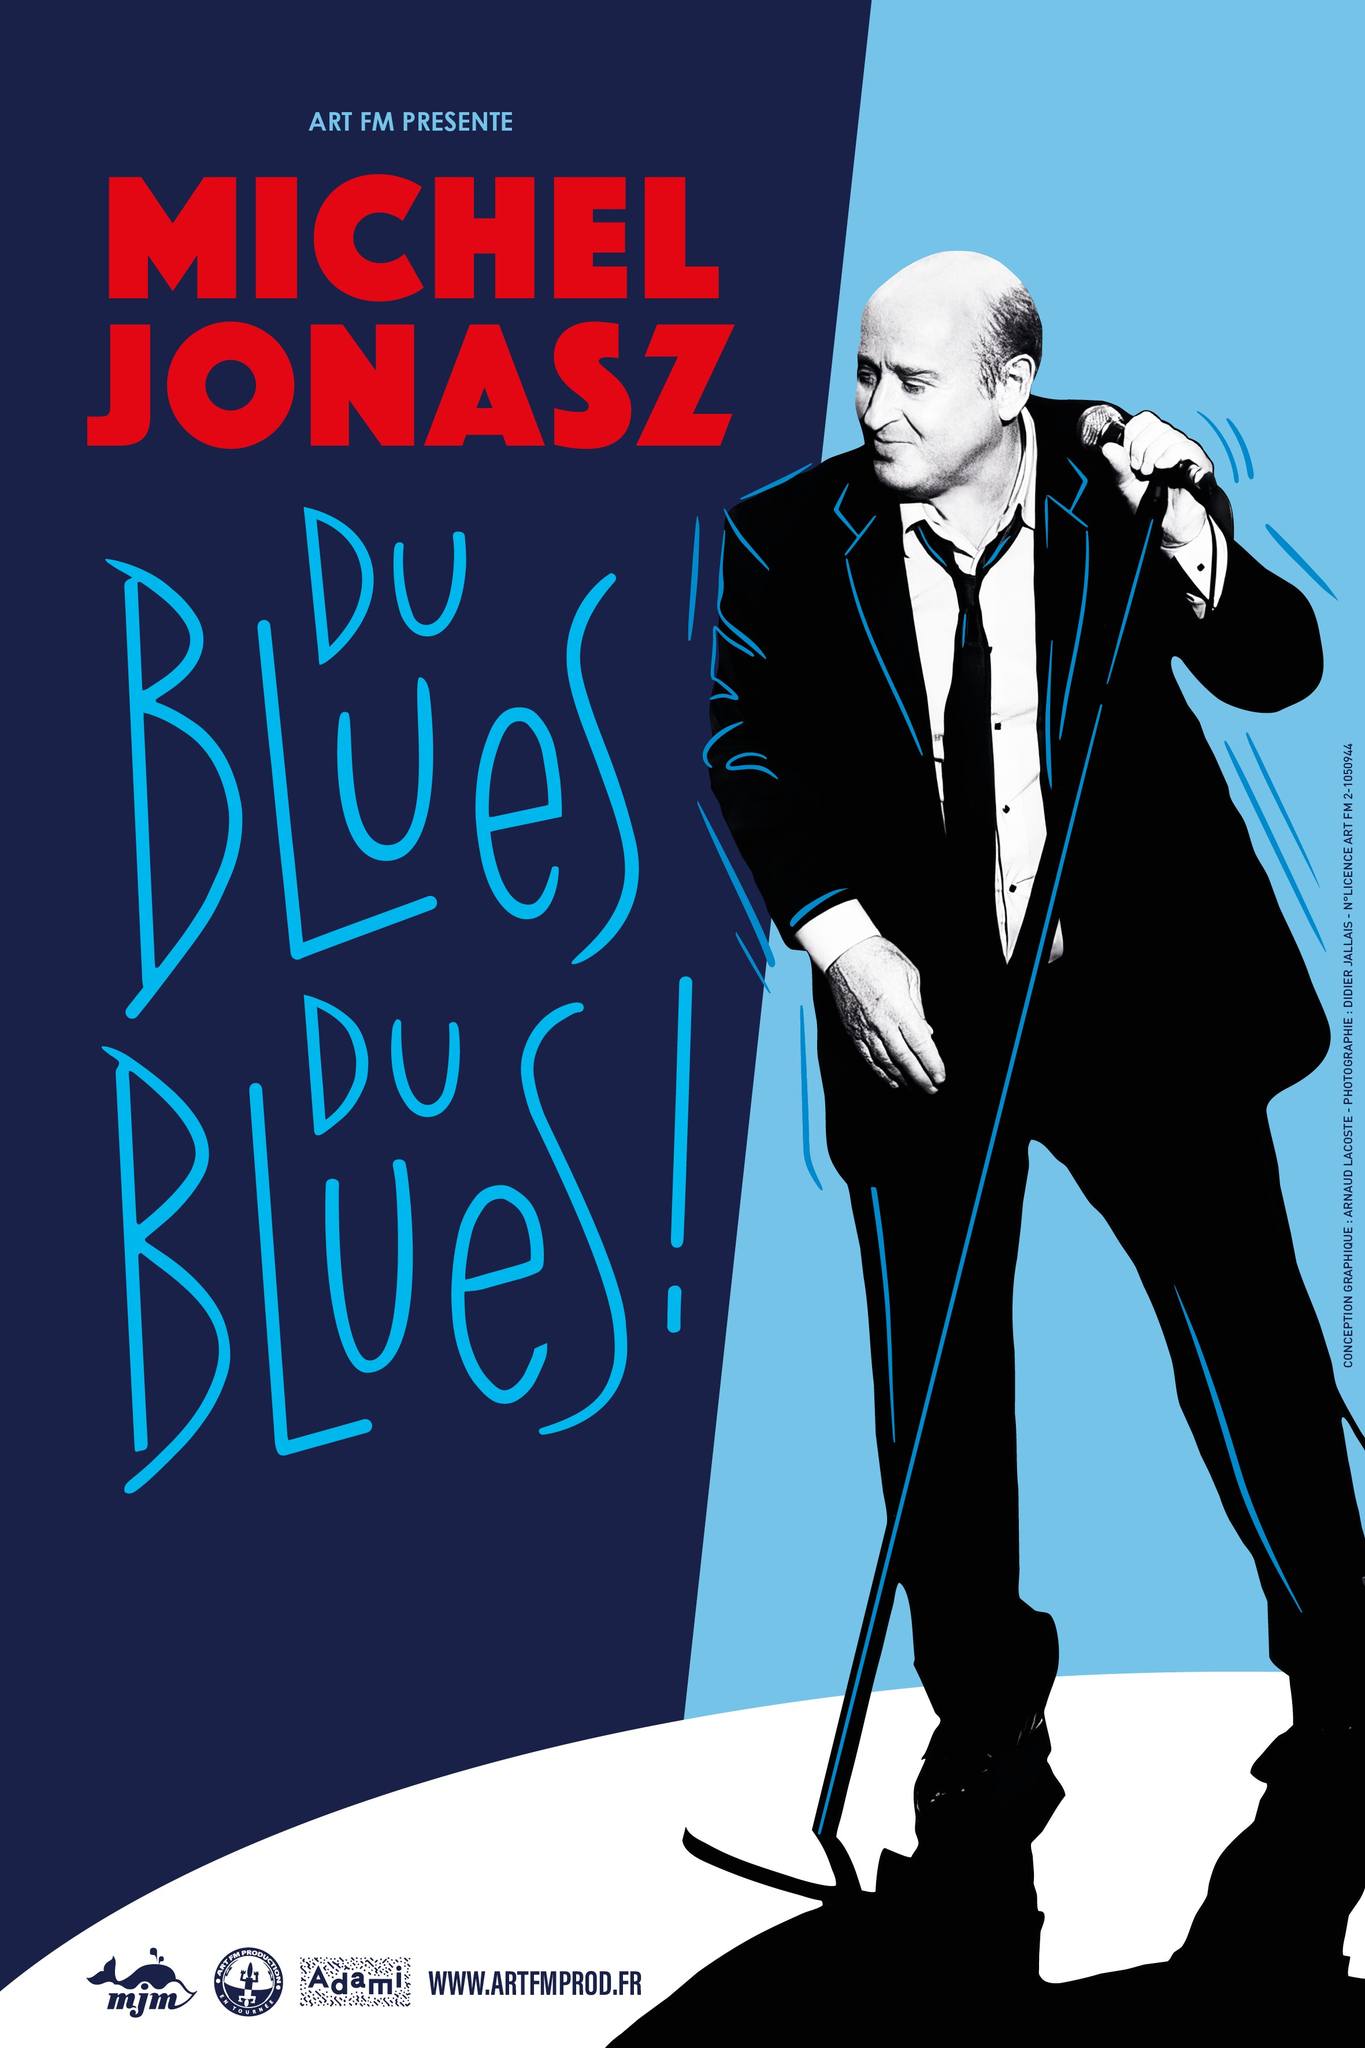 MICHEL JONASZ " DU BLUES DU BLUES ! " au Forum de LIEGE